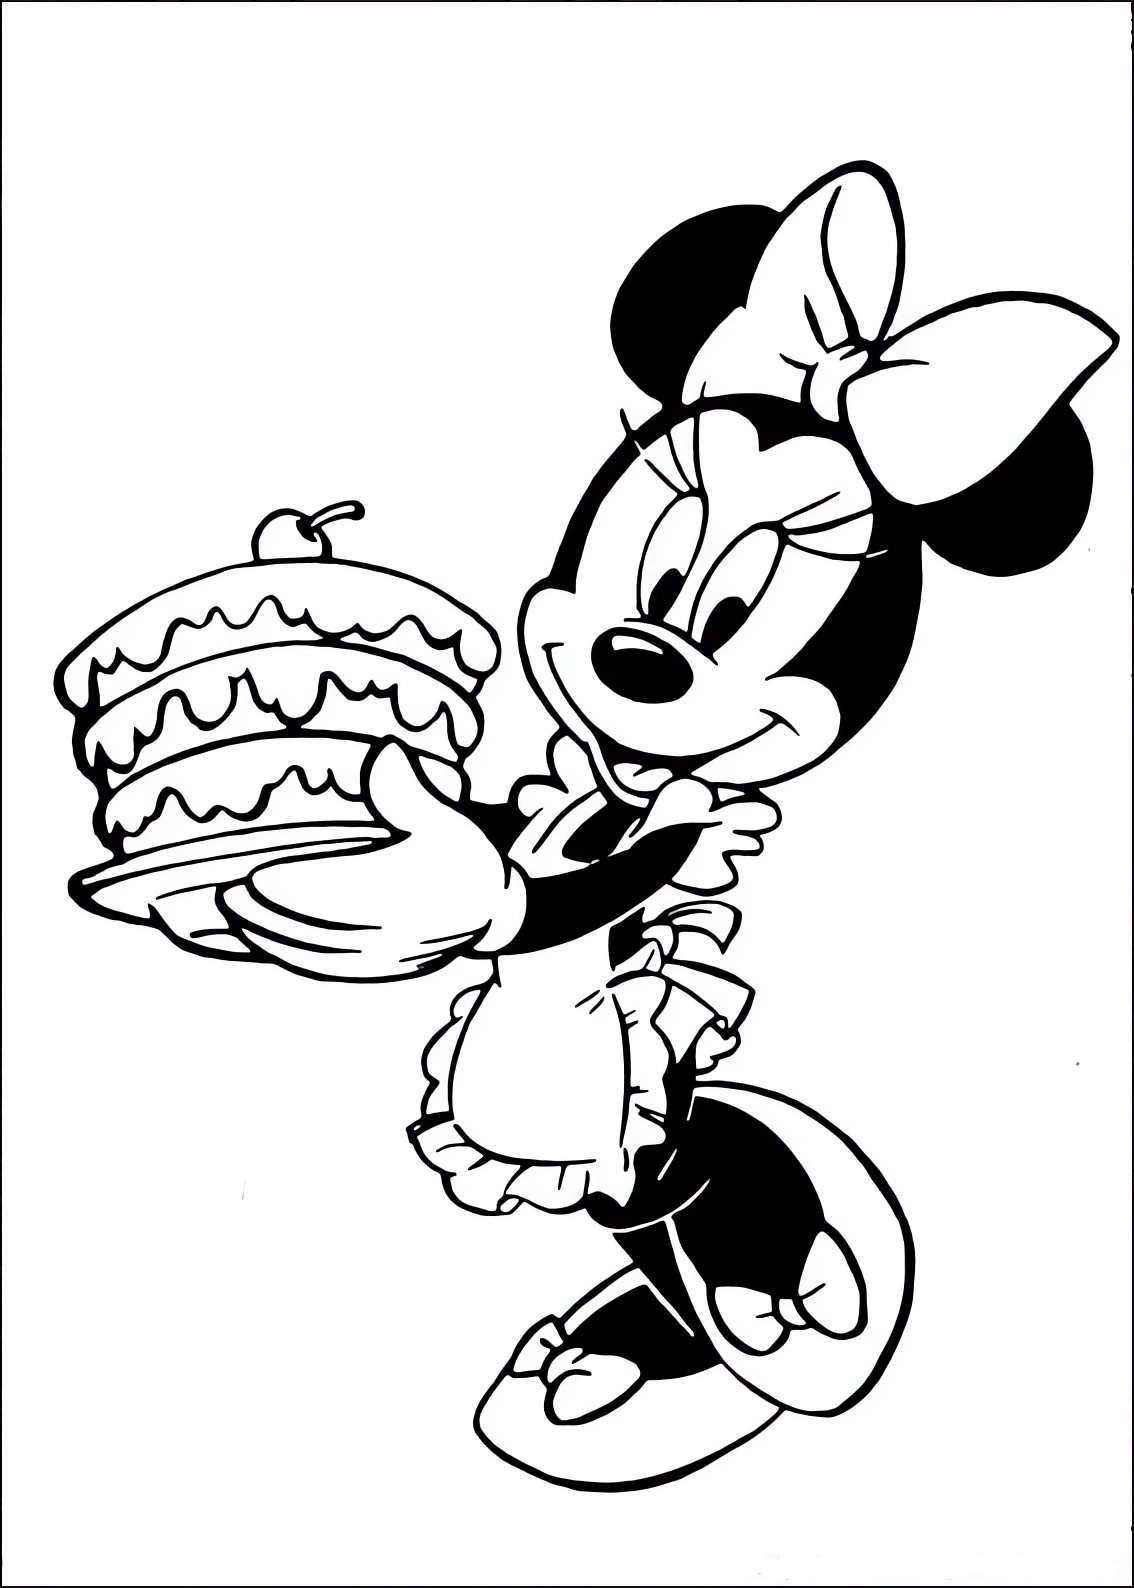 Disegno da colorare di Minnie che porta una torta